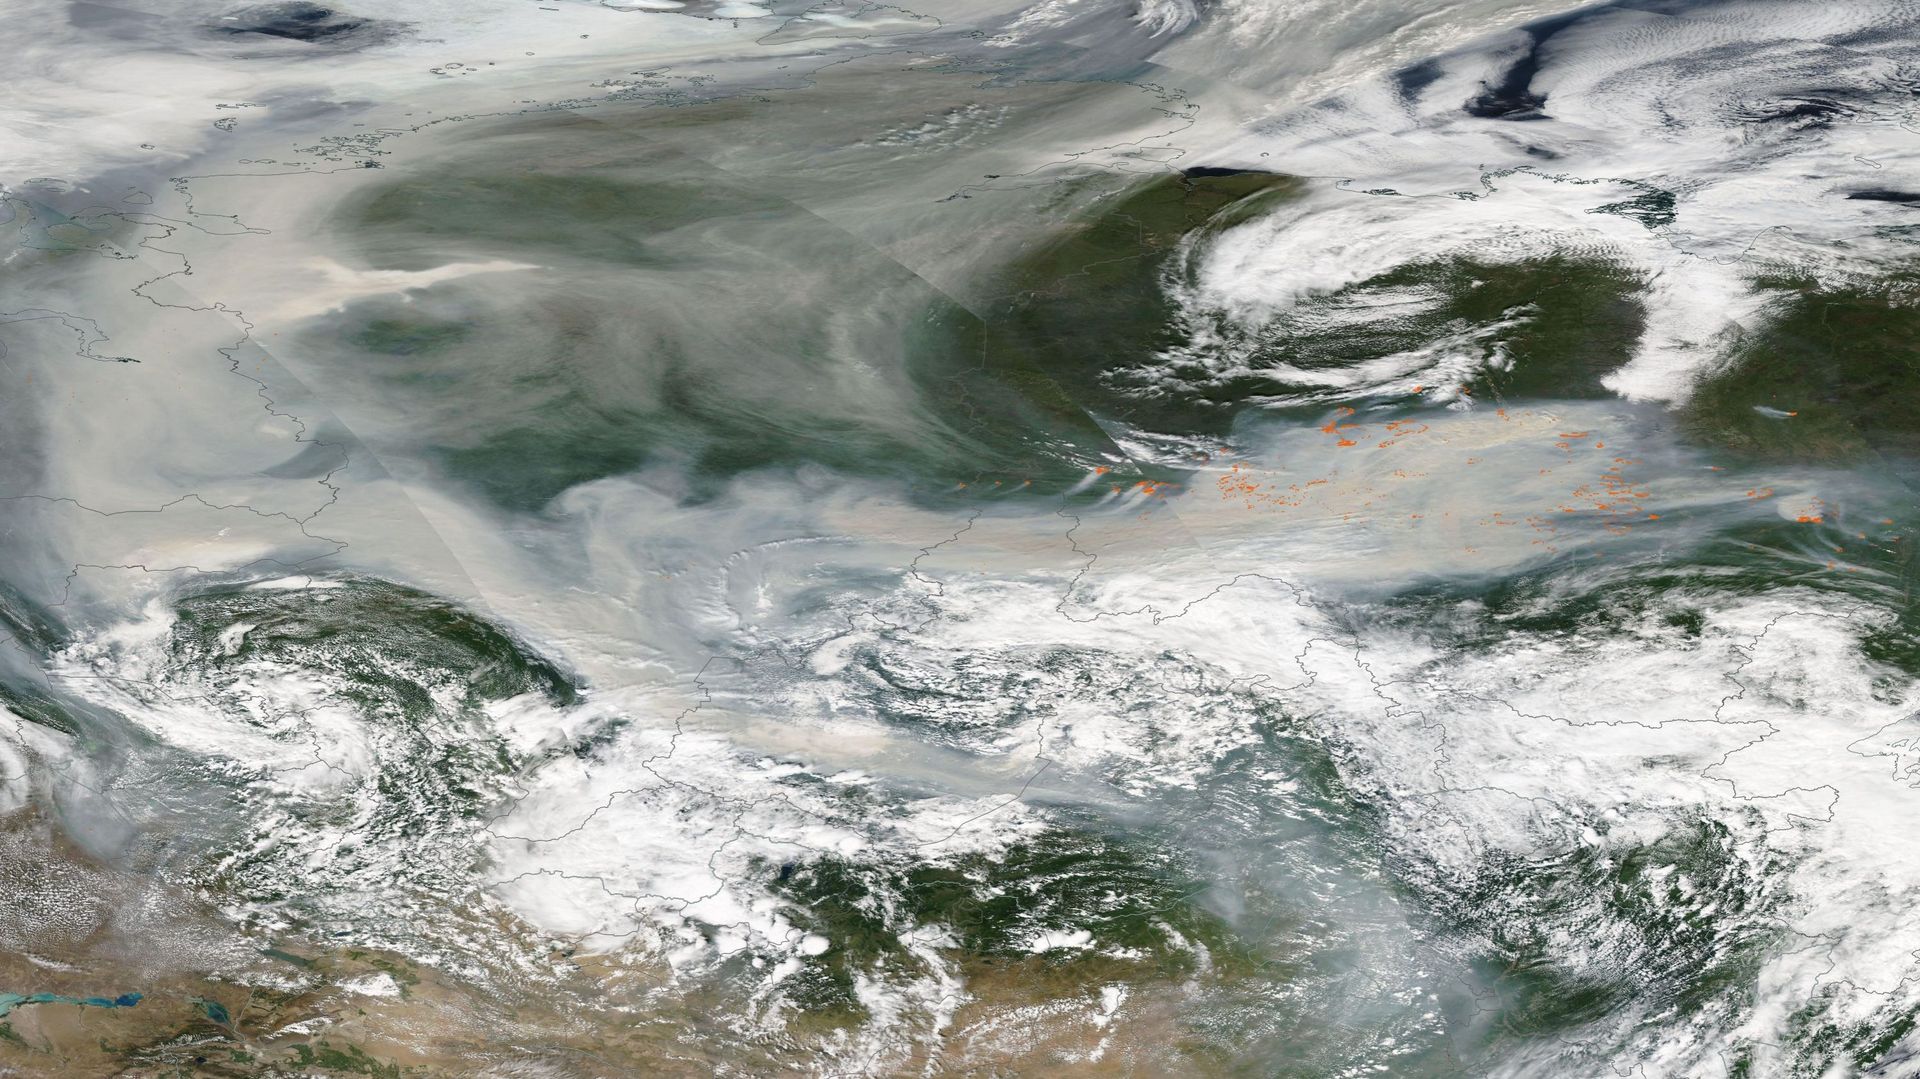 Le 7 août 2021, l’observatoire de la terre de la Nasa montrait ces images de fumée d’incendies. On les reconnaît car elles sont plus foncées que les nuages.